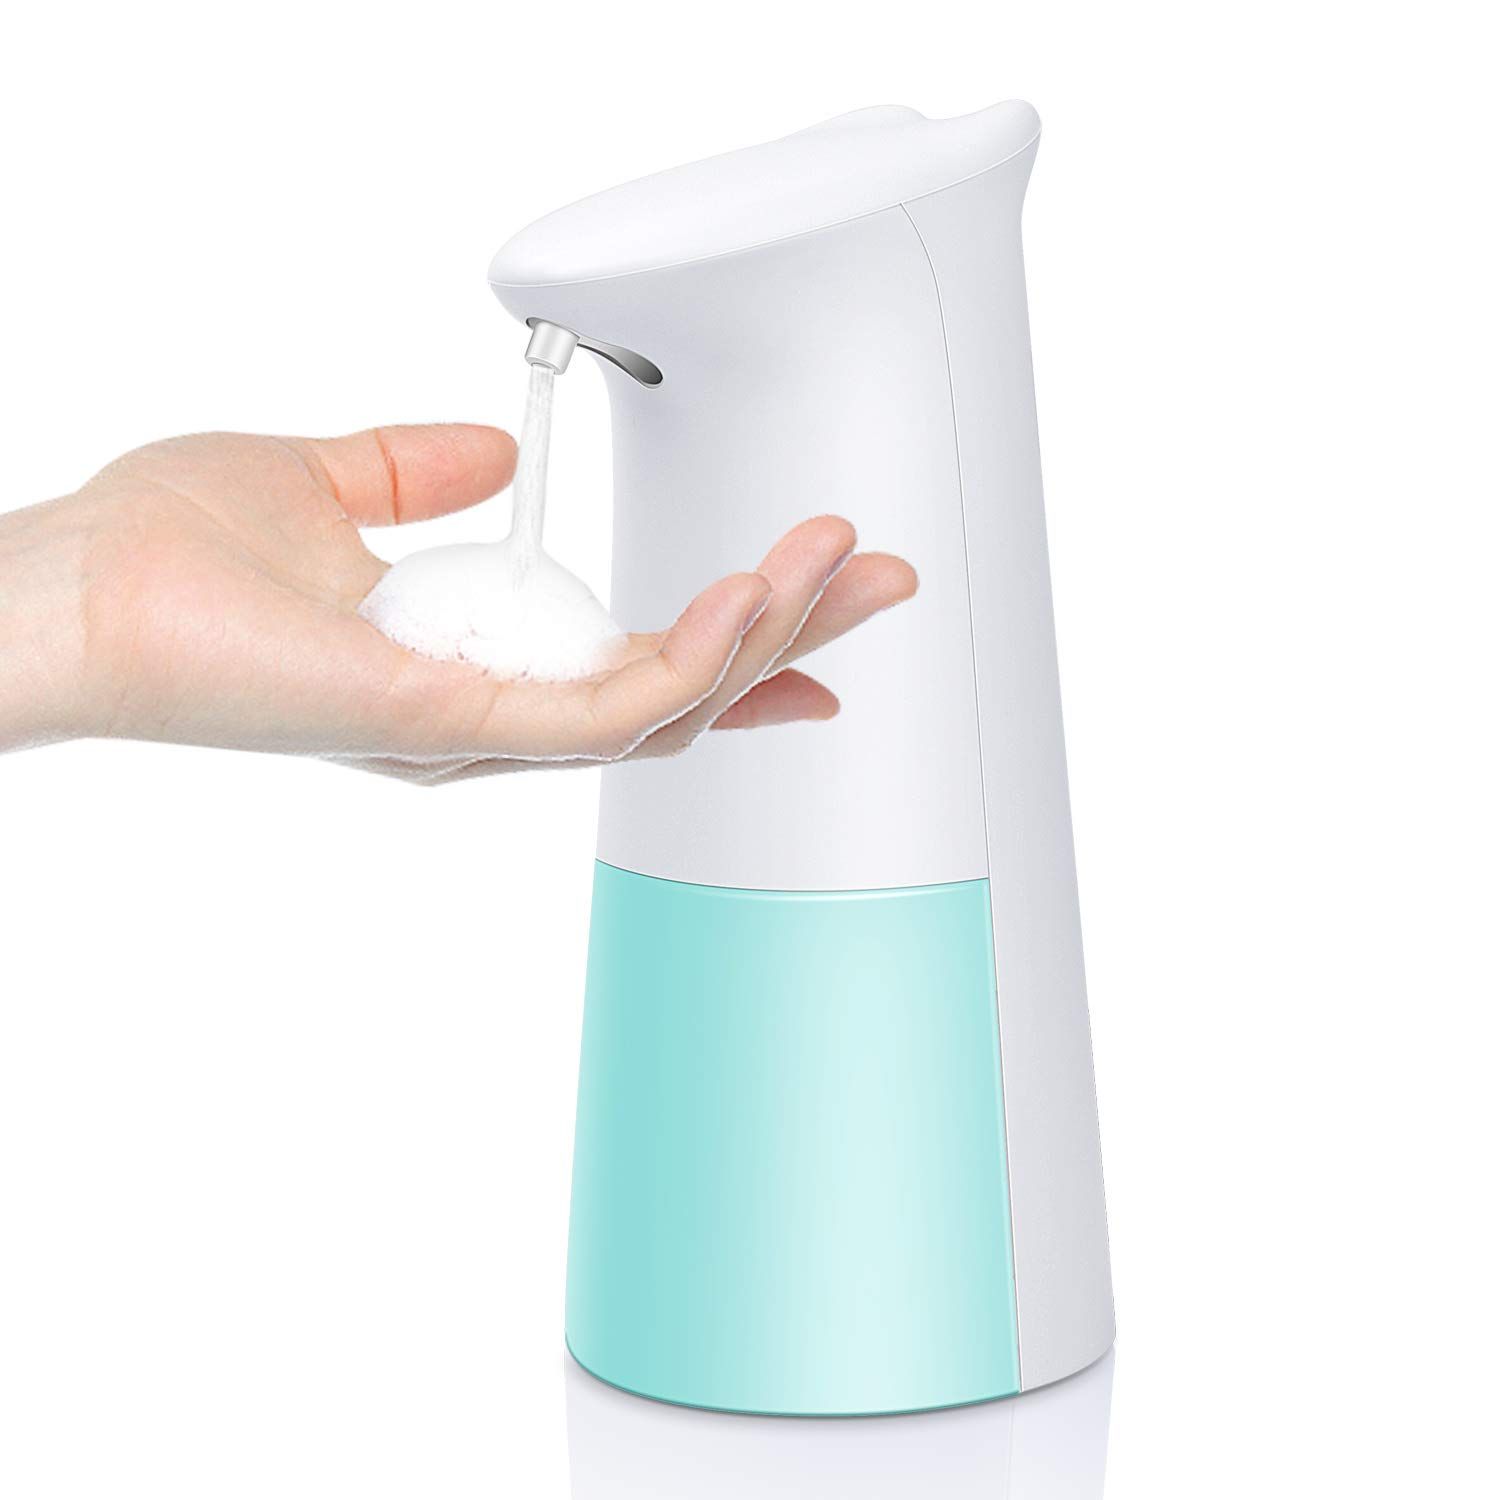 Foaming Soap Dispenser Automatic Soap Dispenser Hand soap Dispenser Touchless Soap Dispenser 300ML f | Amazon (US)